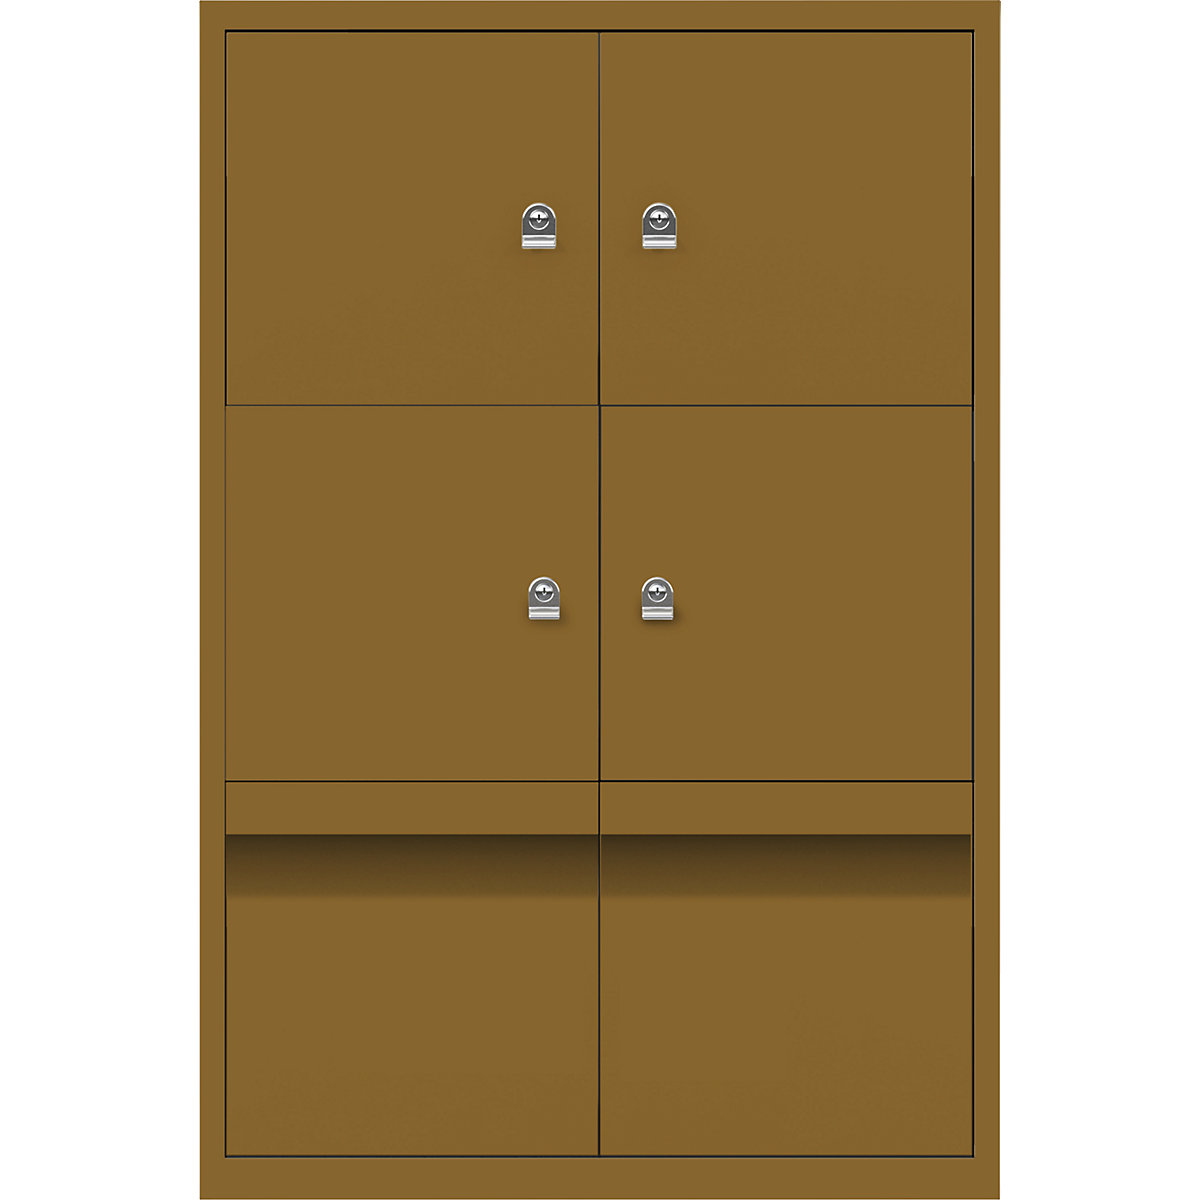 Armoire à casiers LateralFile™ – BISLEY, 4 casiers et 2 tiroirs hauteur 375 mm, dijon-30